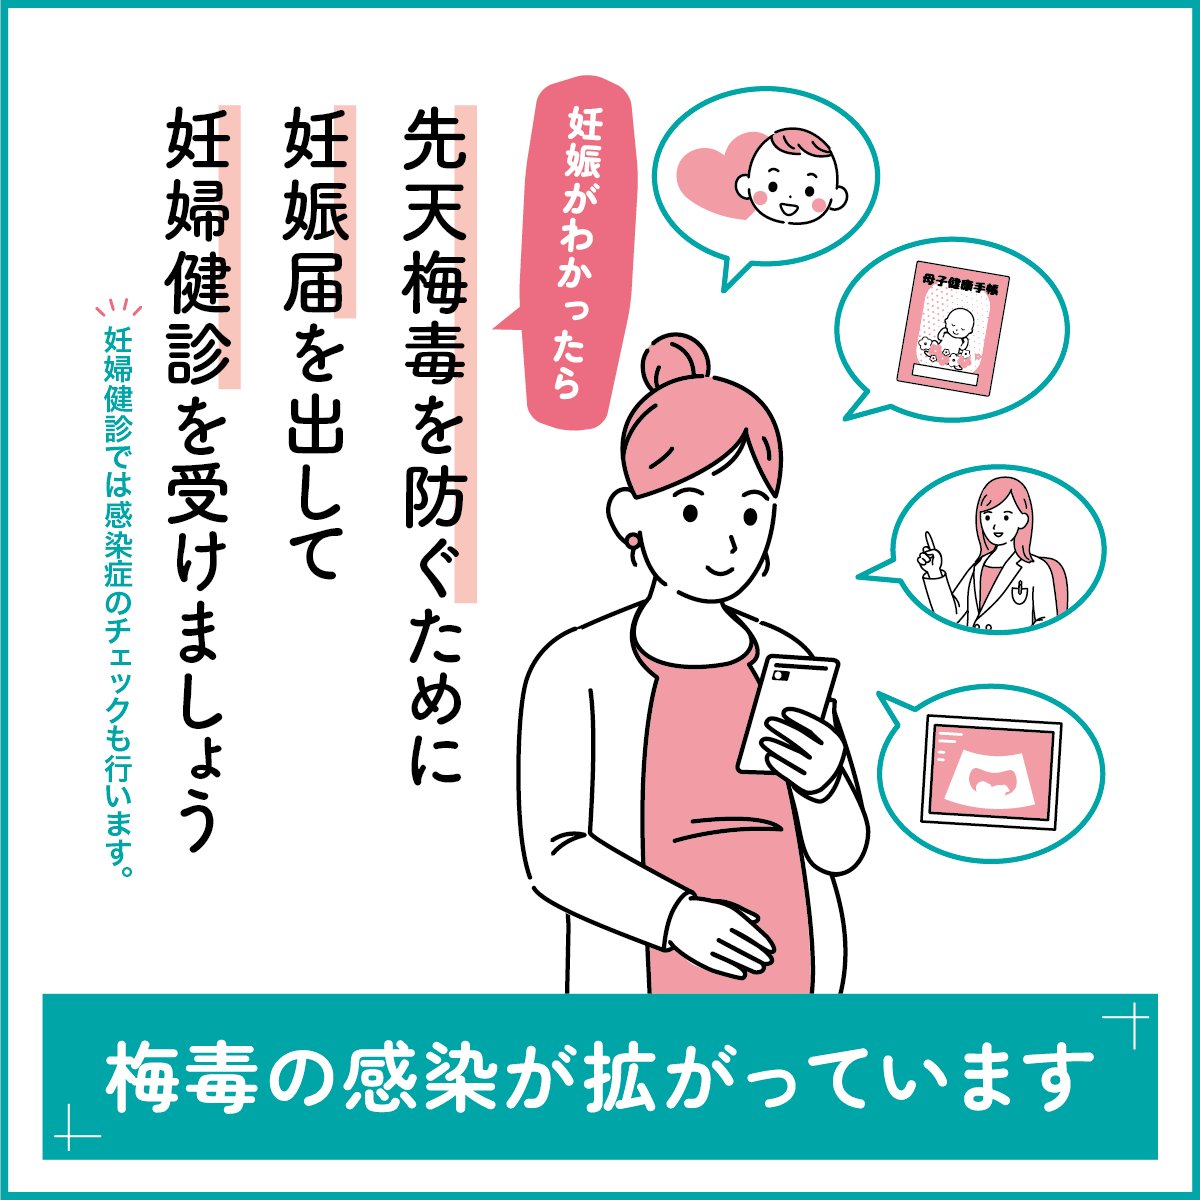 【#梅毒 の感染が拡がっています】 妊娠がわかったら、#先天梅毒 を防ぐために妊娠届を出して #妊婦健診 を受けましょう。早い段階で感染がわかれば、早期の治療により赤ちゃんの感染リスクを下げられます。 1回の注射で赤ちゃんへの感染を防ぐことができる場合もあります。 mhlw.go.jp/stf/seisakunit…